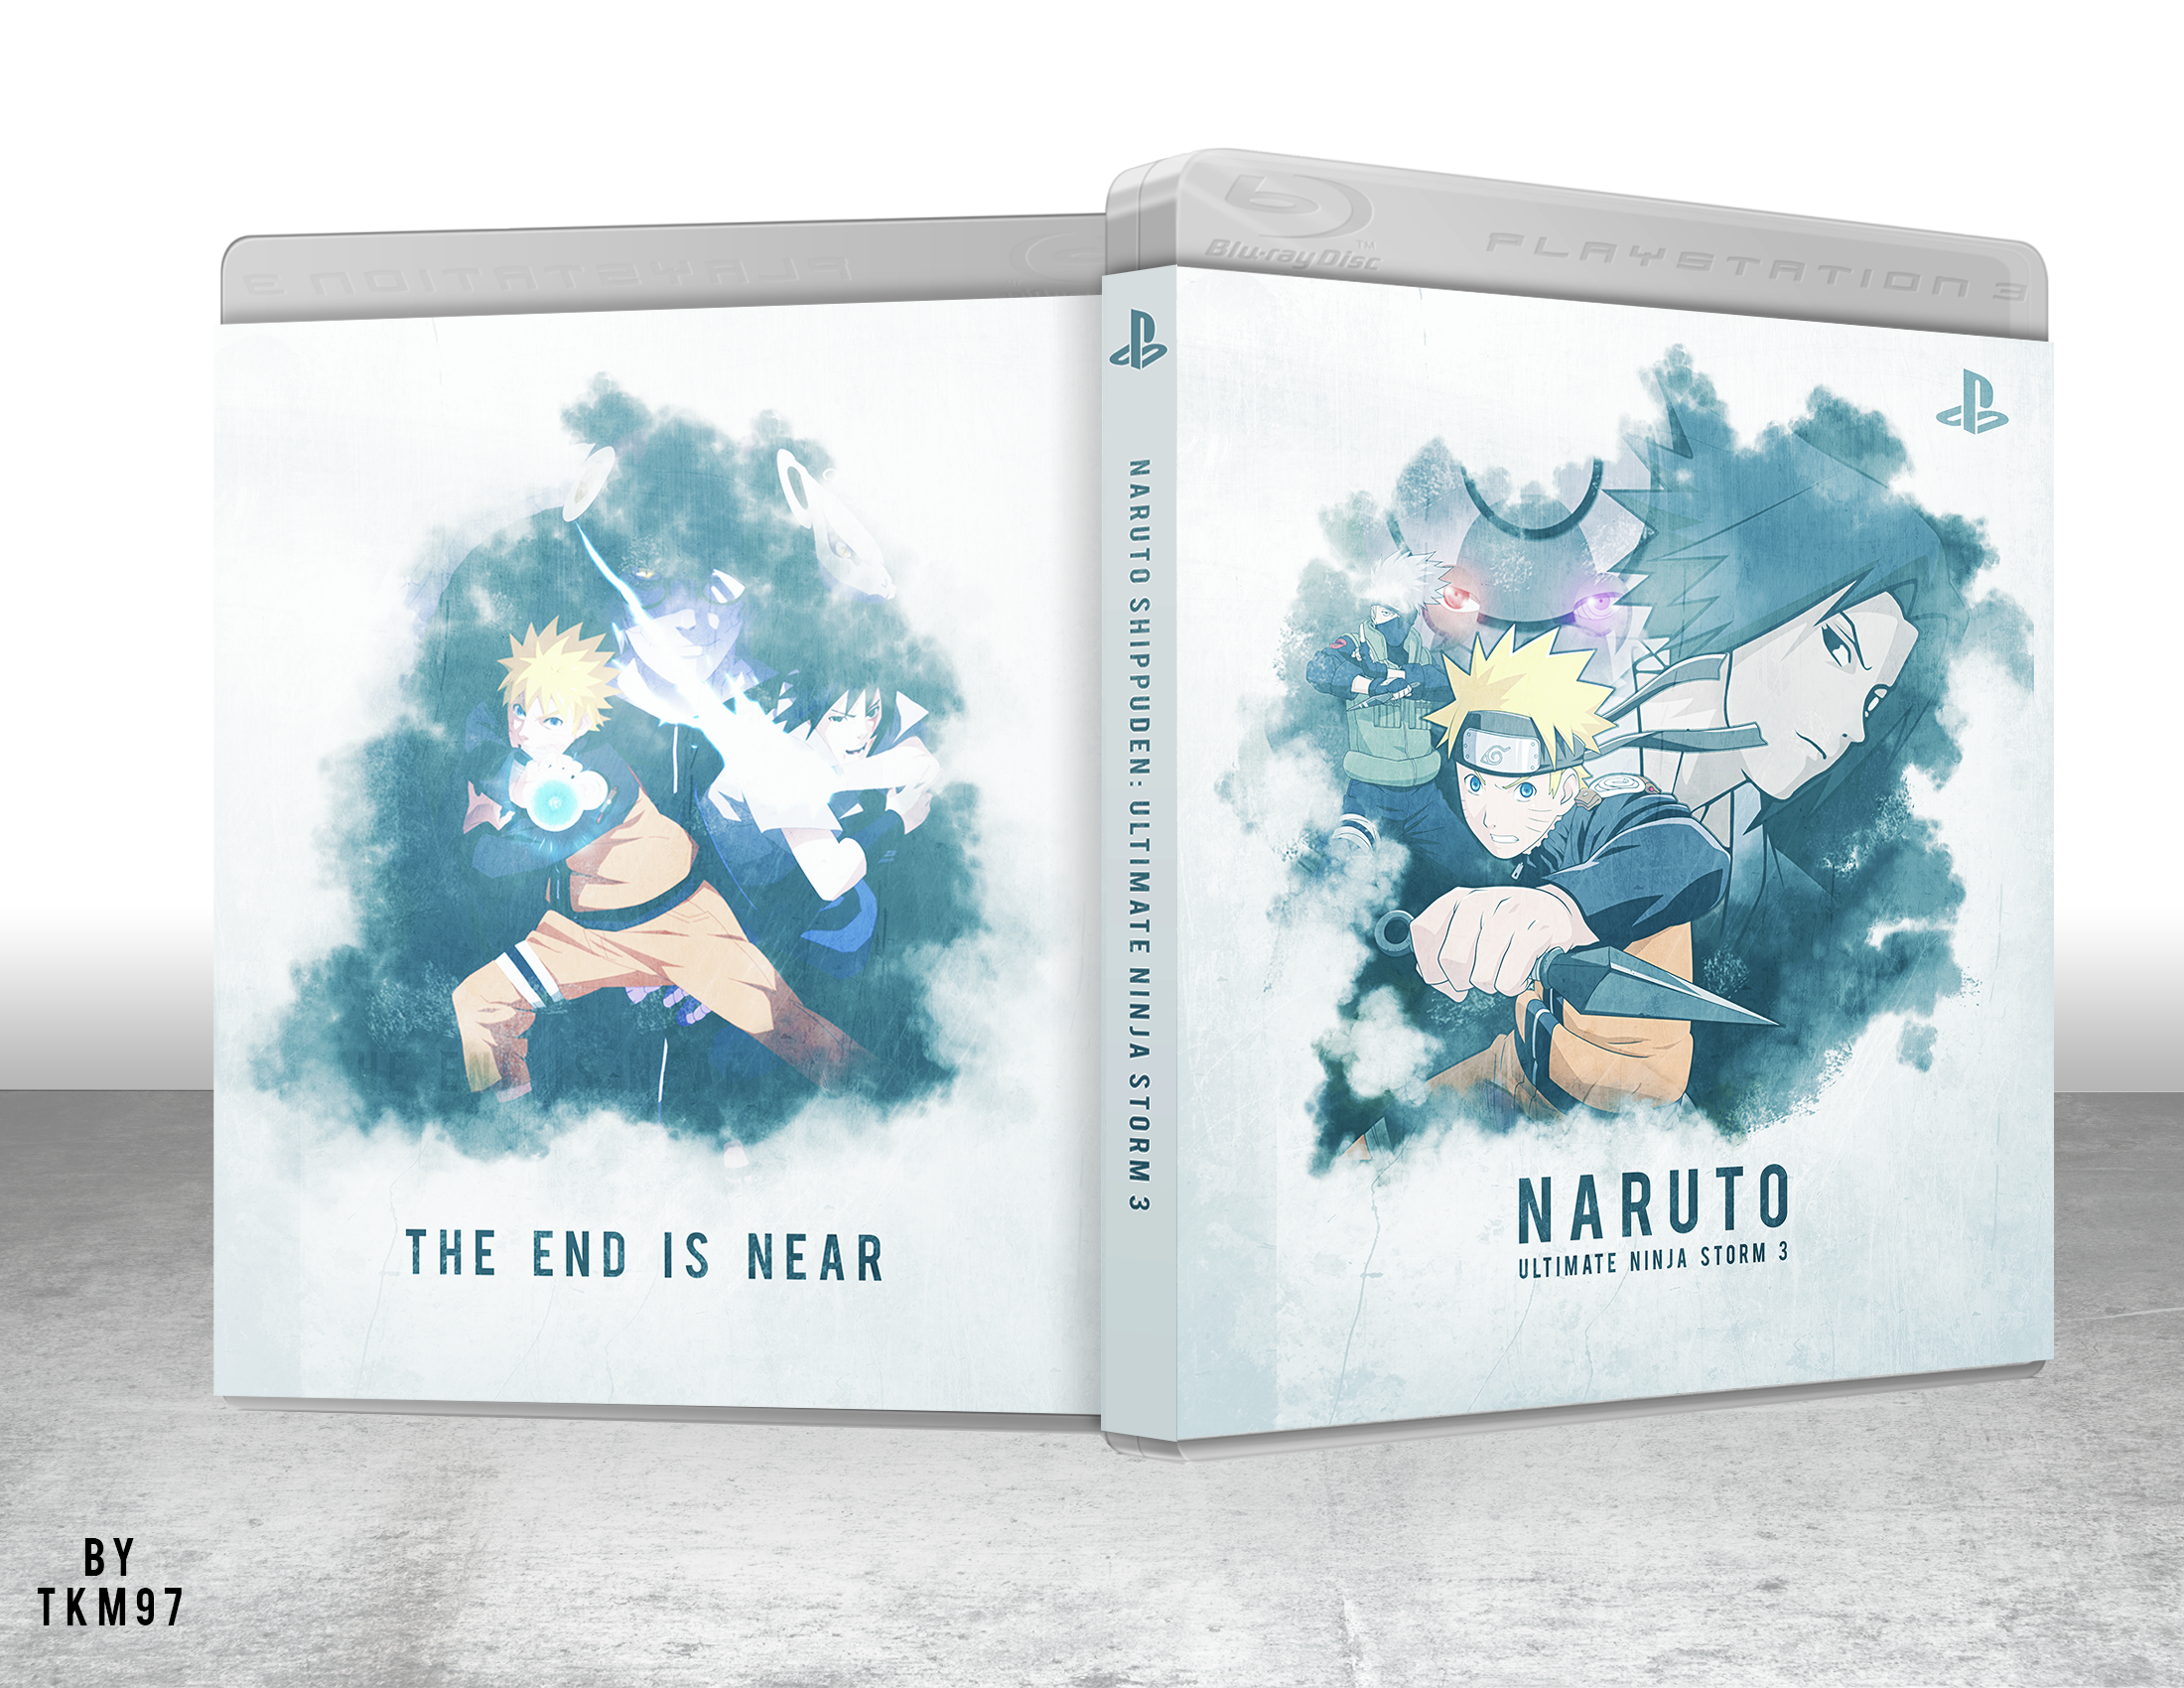 Naruto: Ultimate Ninja Storm 3 box cover